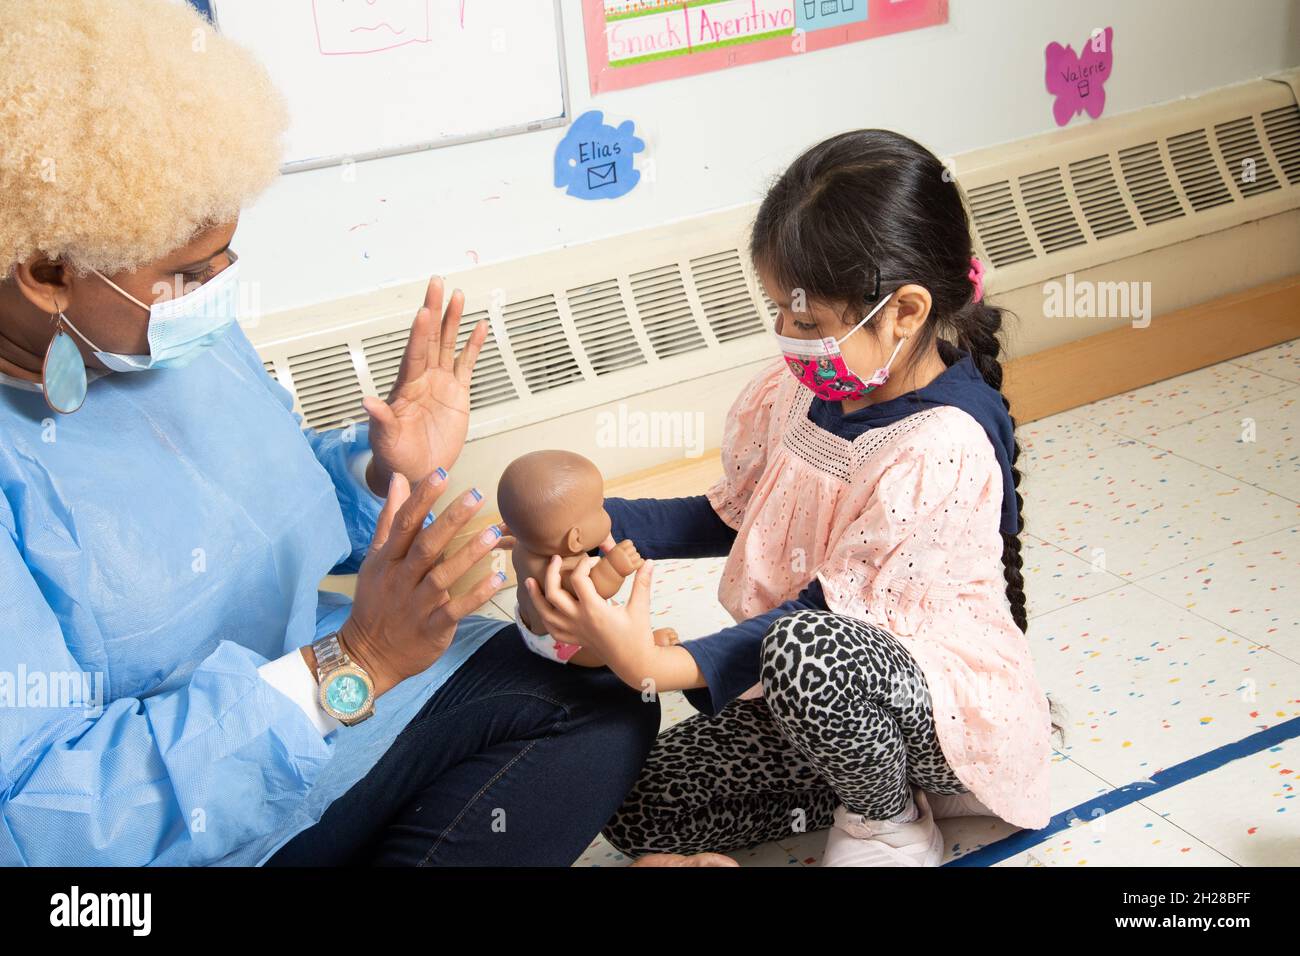 Bildung Preschool Mädchen im Alter von 4-5 Jahren mit Puppe spielen und interagieren mit dem Lehrer, beide tragen Gesichtsmasken, um gegen Covid-19 zu schützen Stockfoto